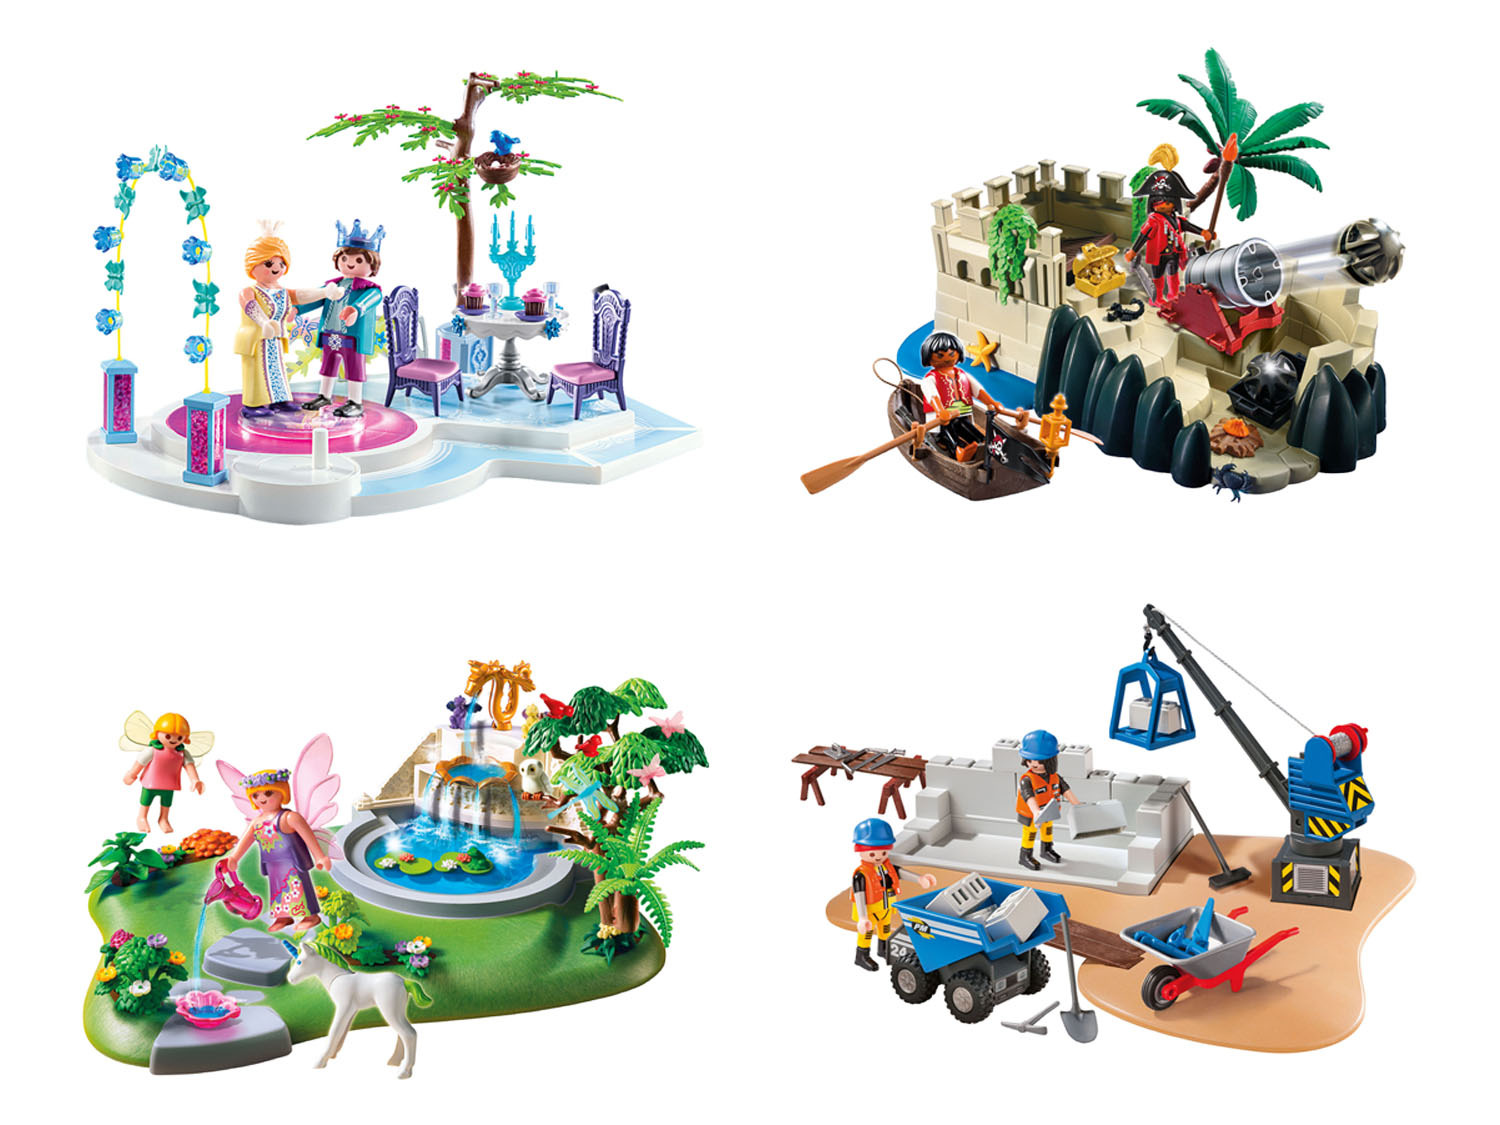 voorzichtig mogelijkheid Melodrama Playmobil Speelset online kopen | LIDL